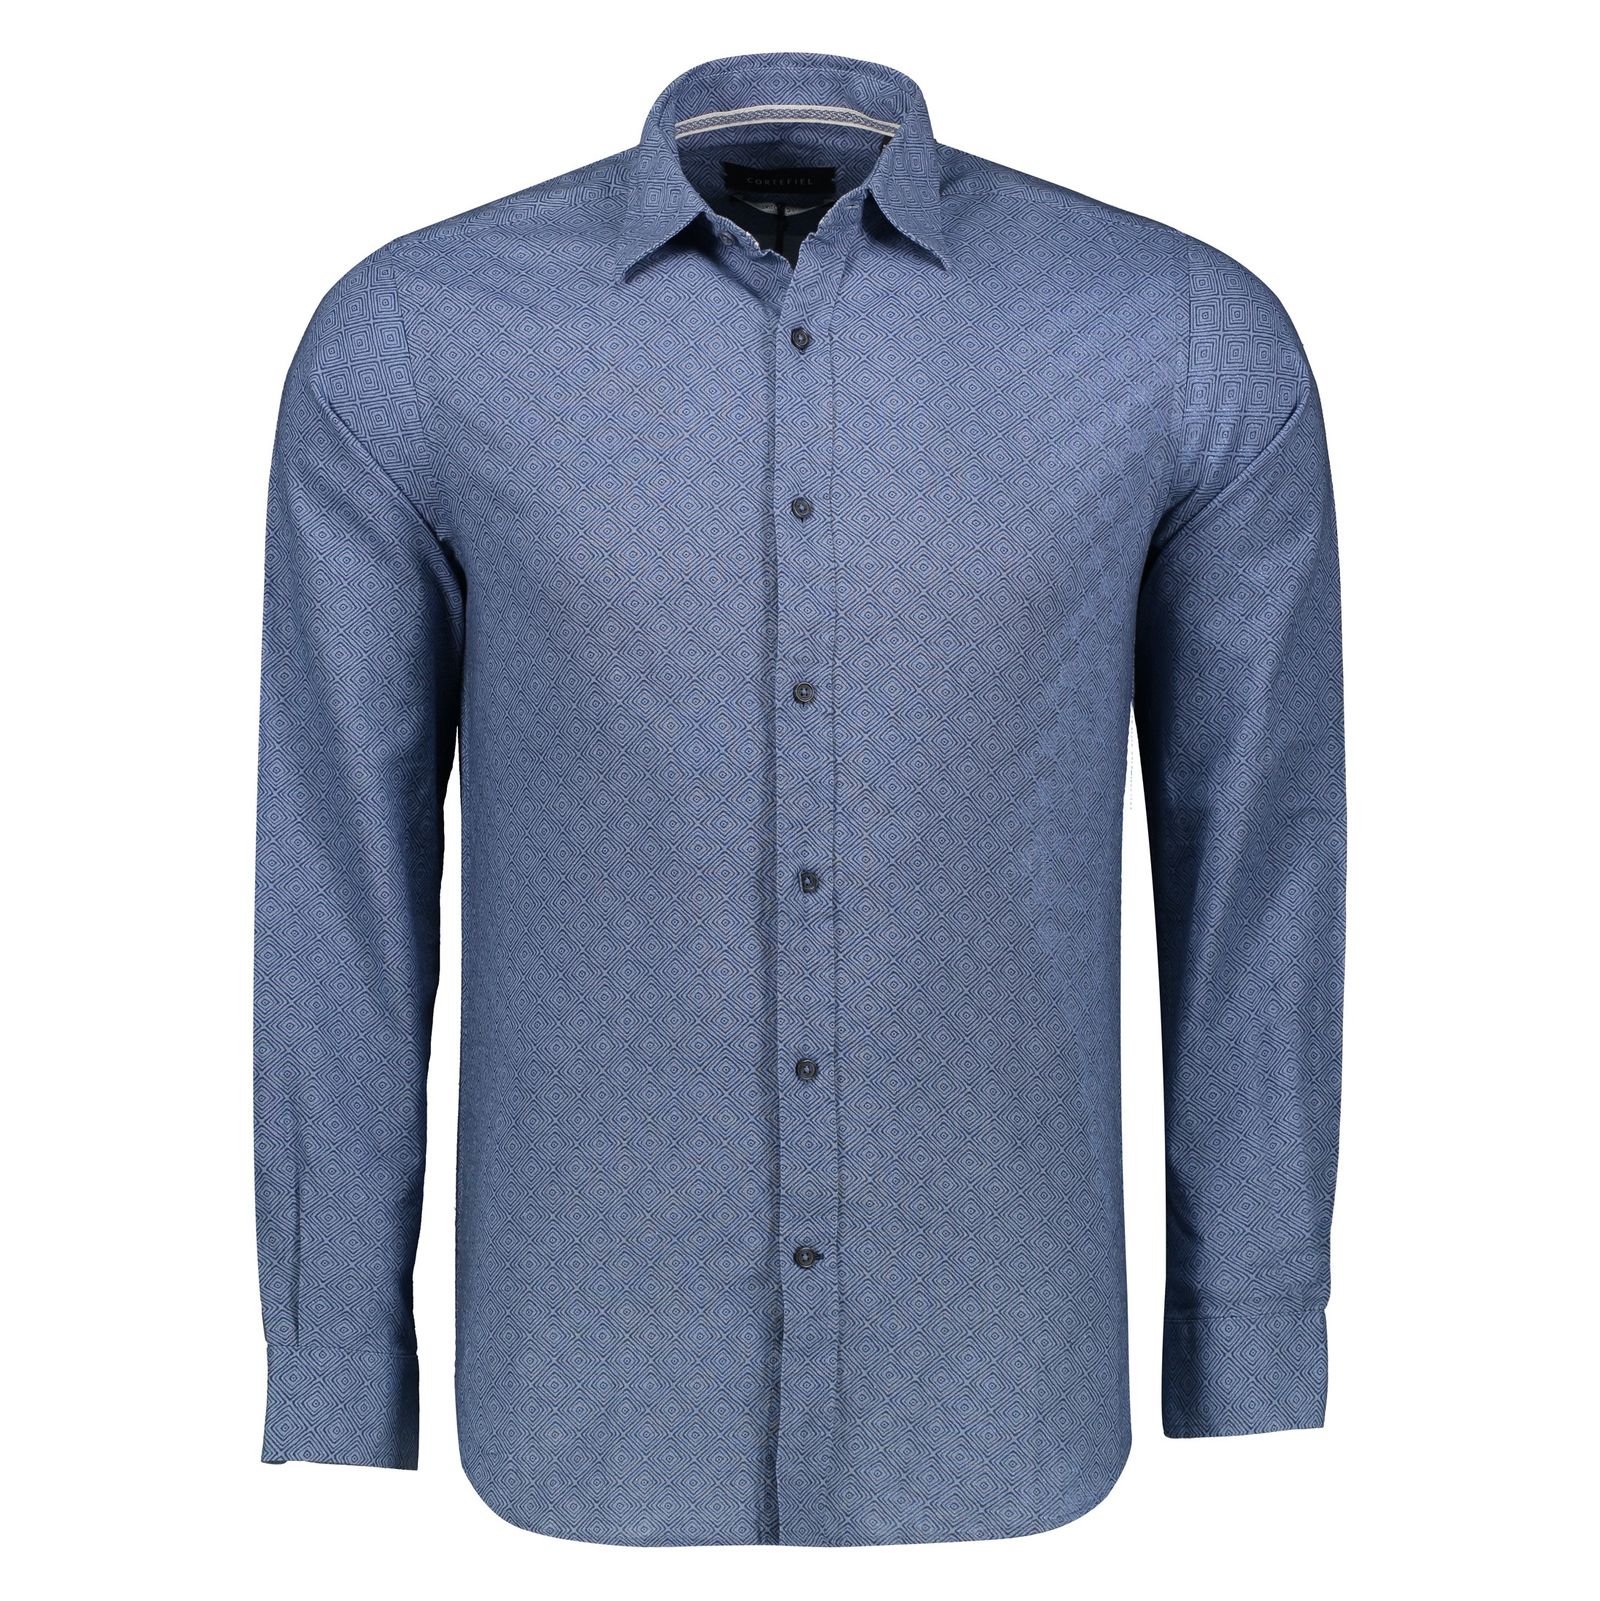 پیراهن مردانه کورتفیل مدل 2217120-19 - آبی - 2